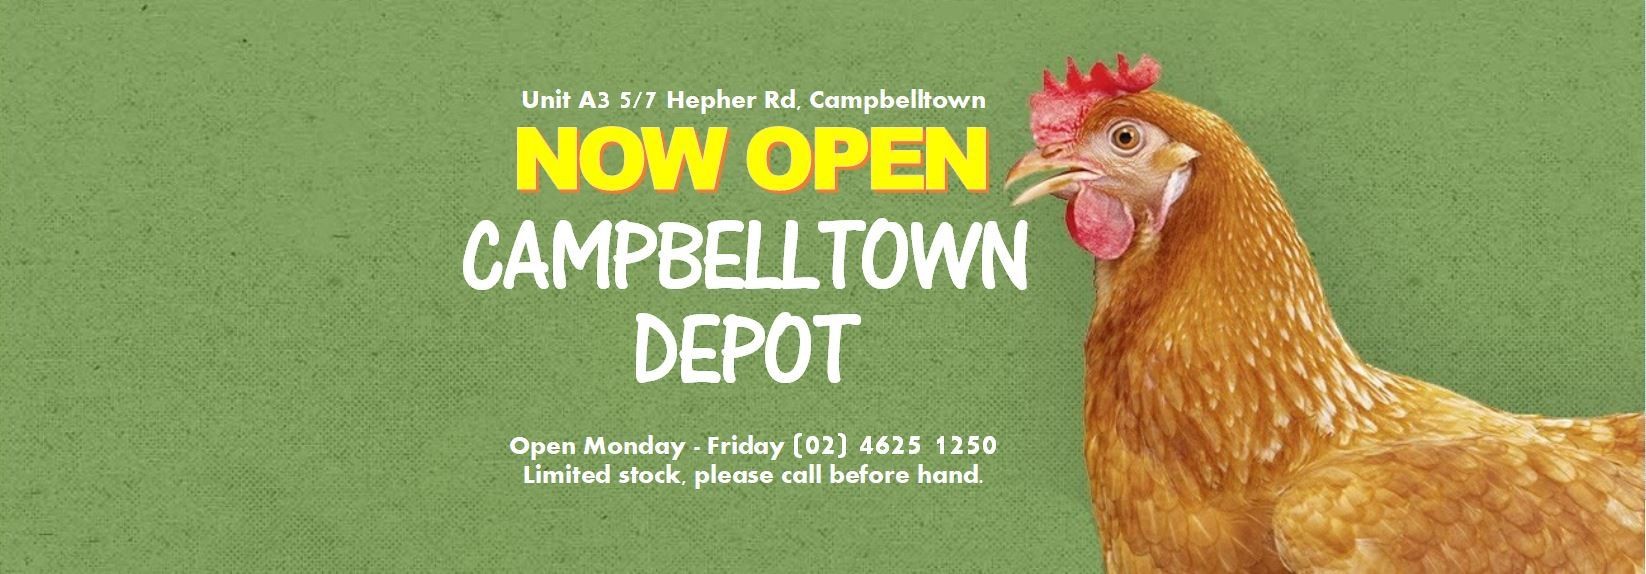 Enfield Produce, New Campbelltown Depot